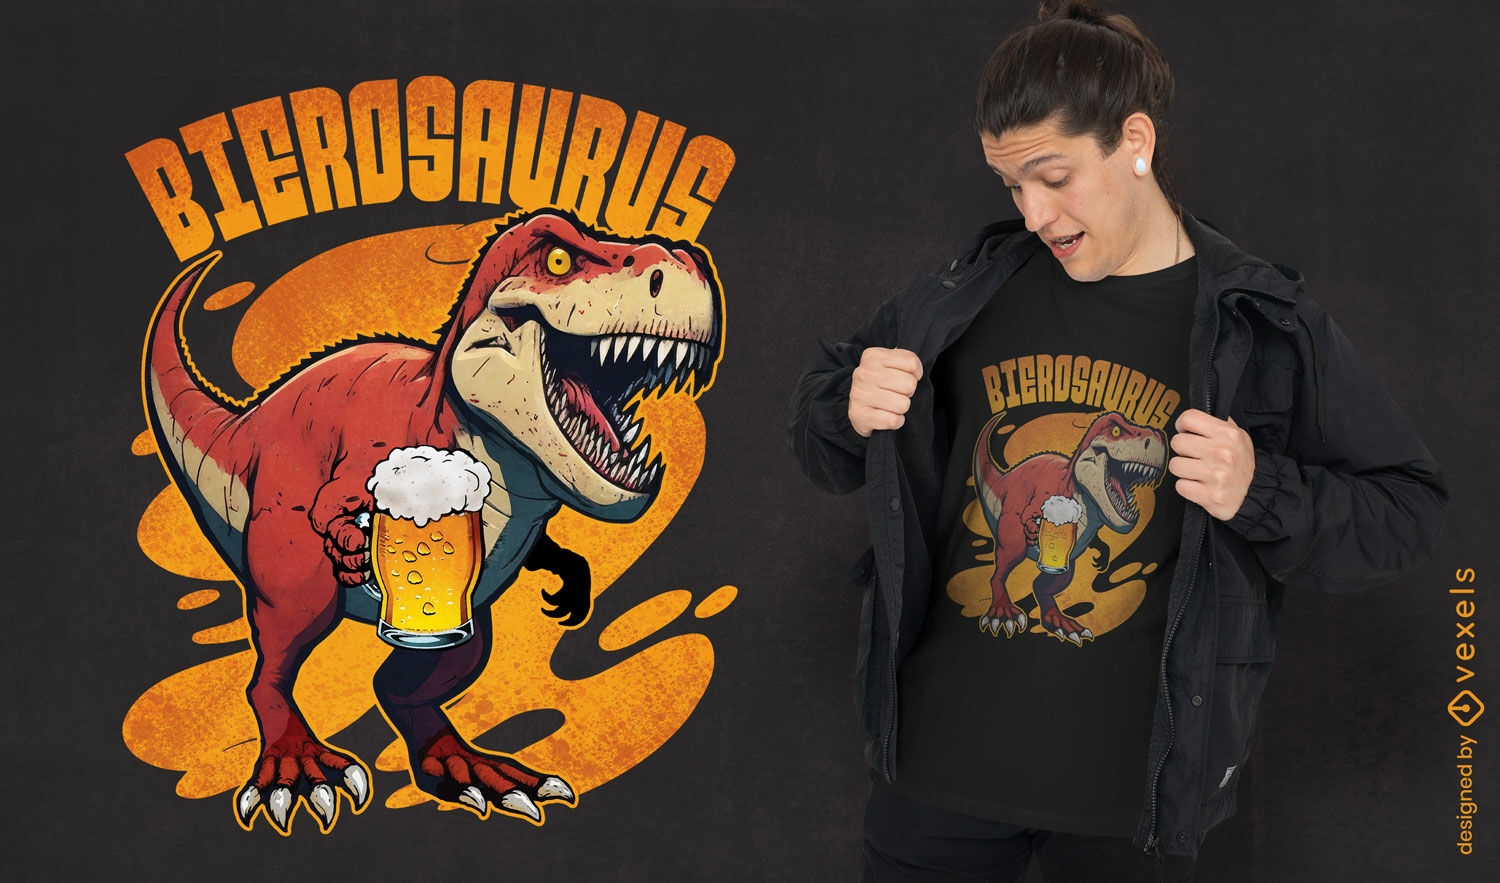 Biertrinkendes Dinosaurier-T-Shirt-Design